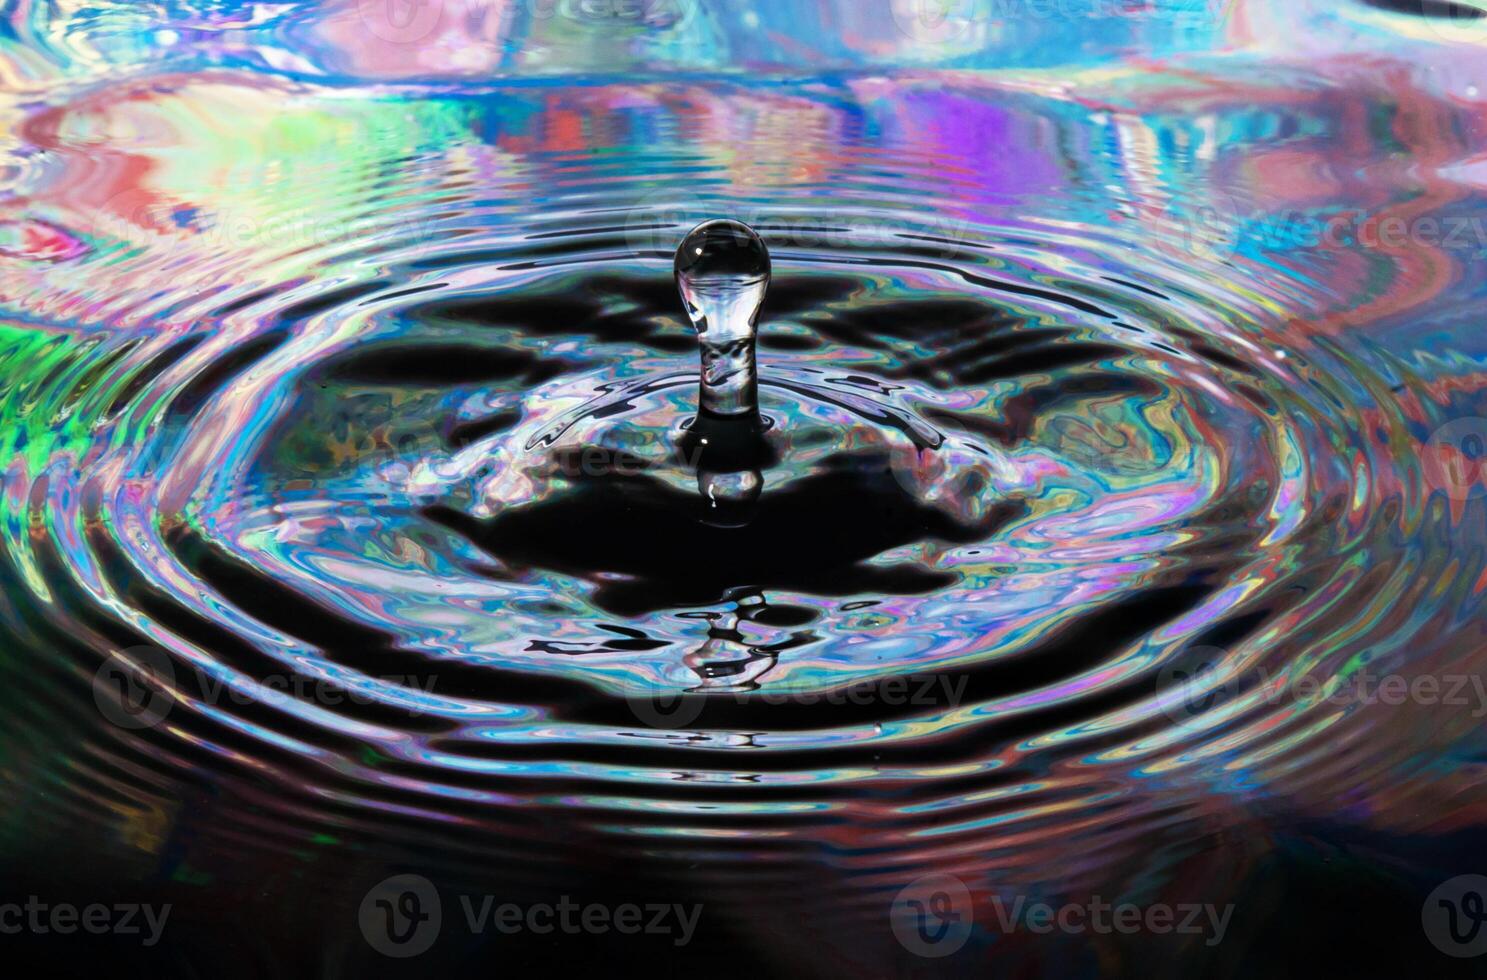 vatten droppar skapande krusning i flytande foto